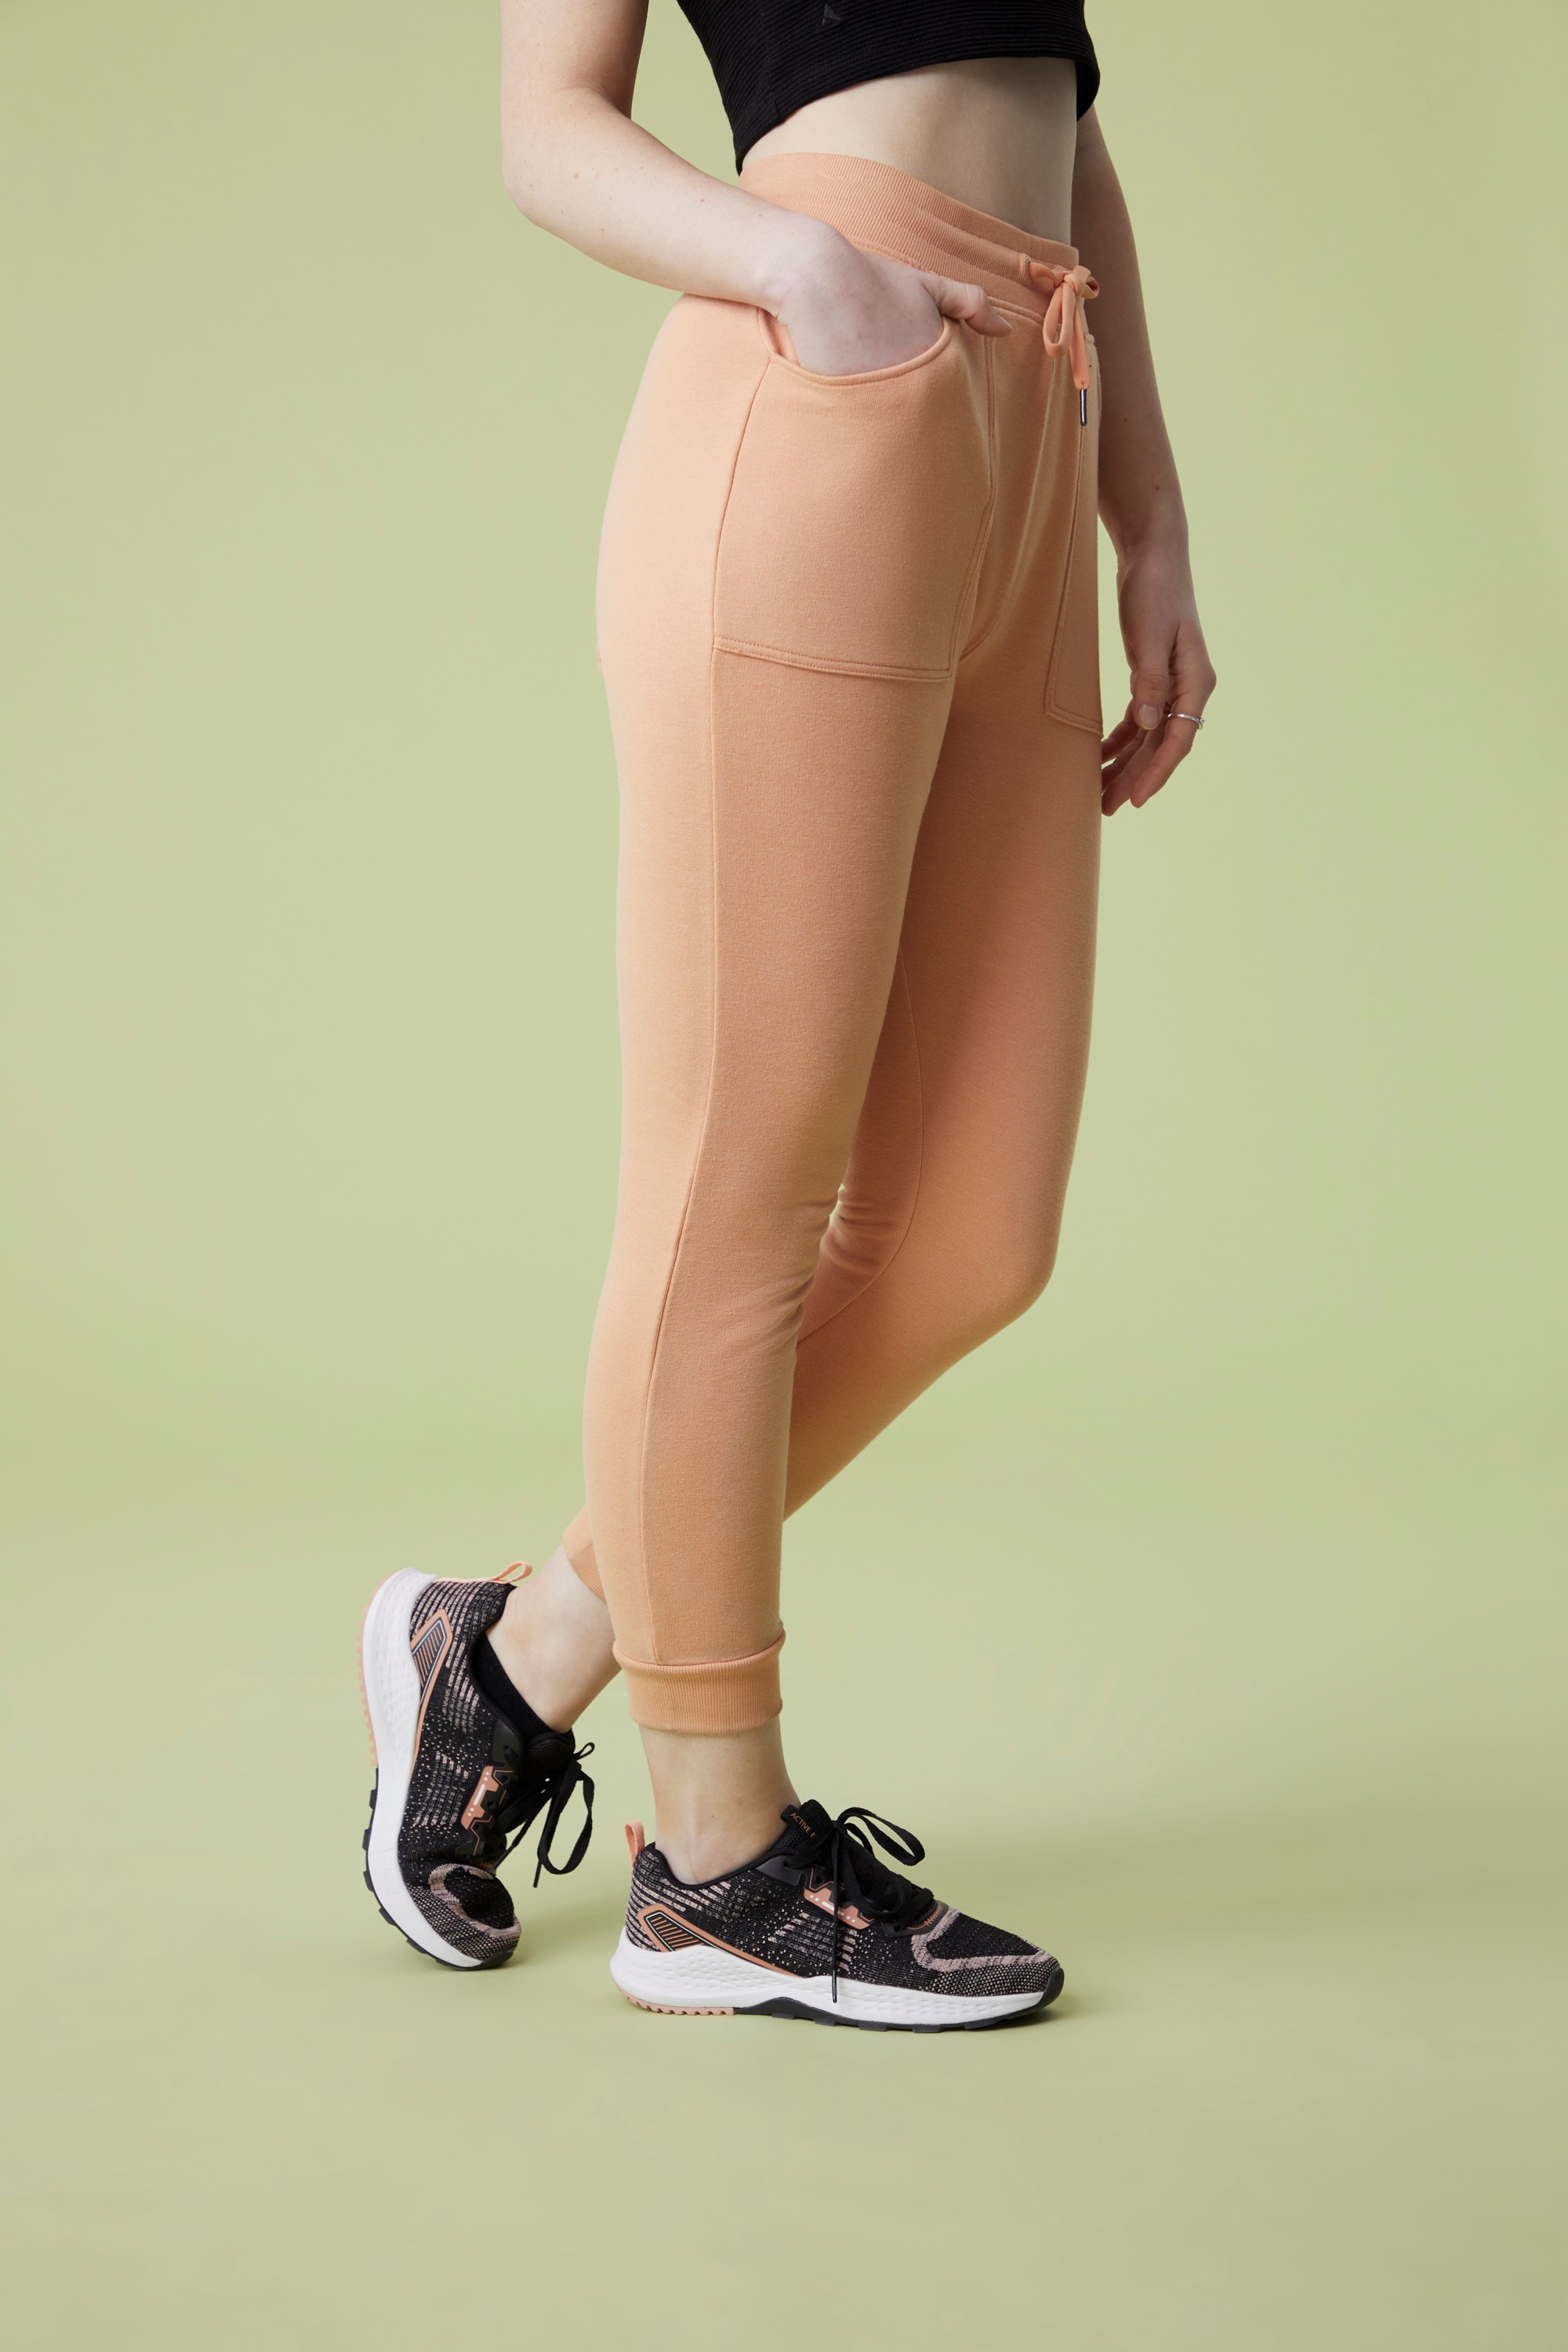 Women's Active Wear Leggings